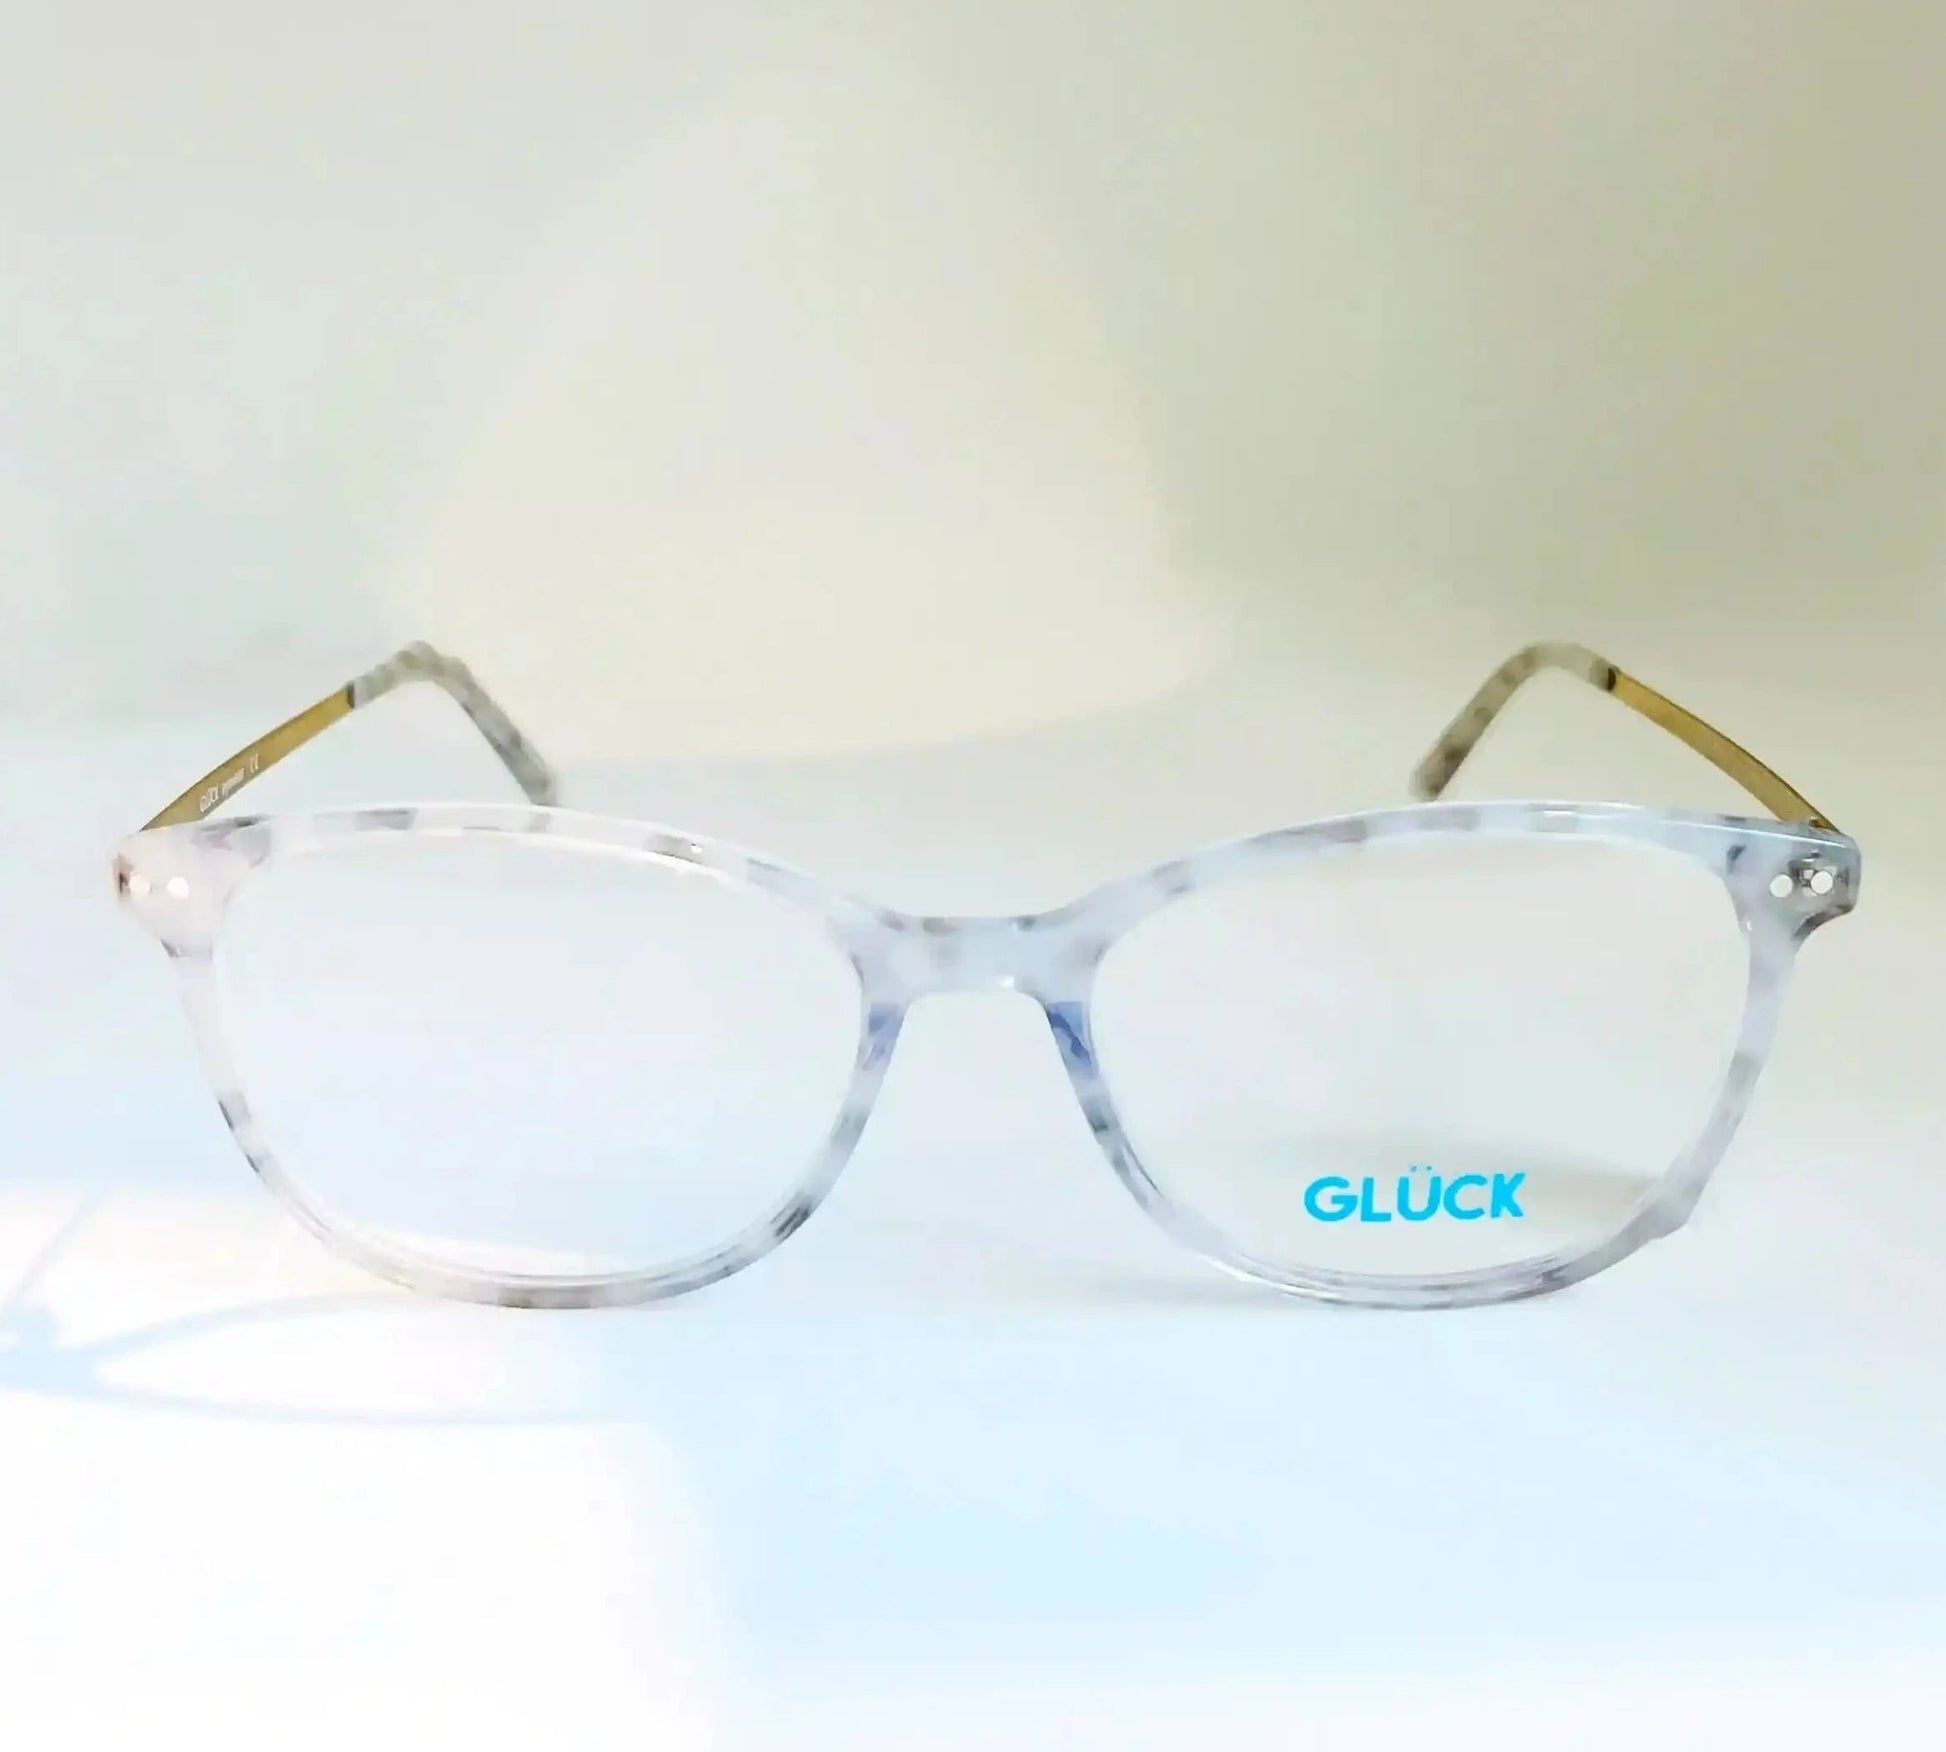 GLUCK REF:GRGB011 - Optica Visión Natural